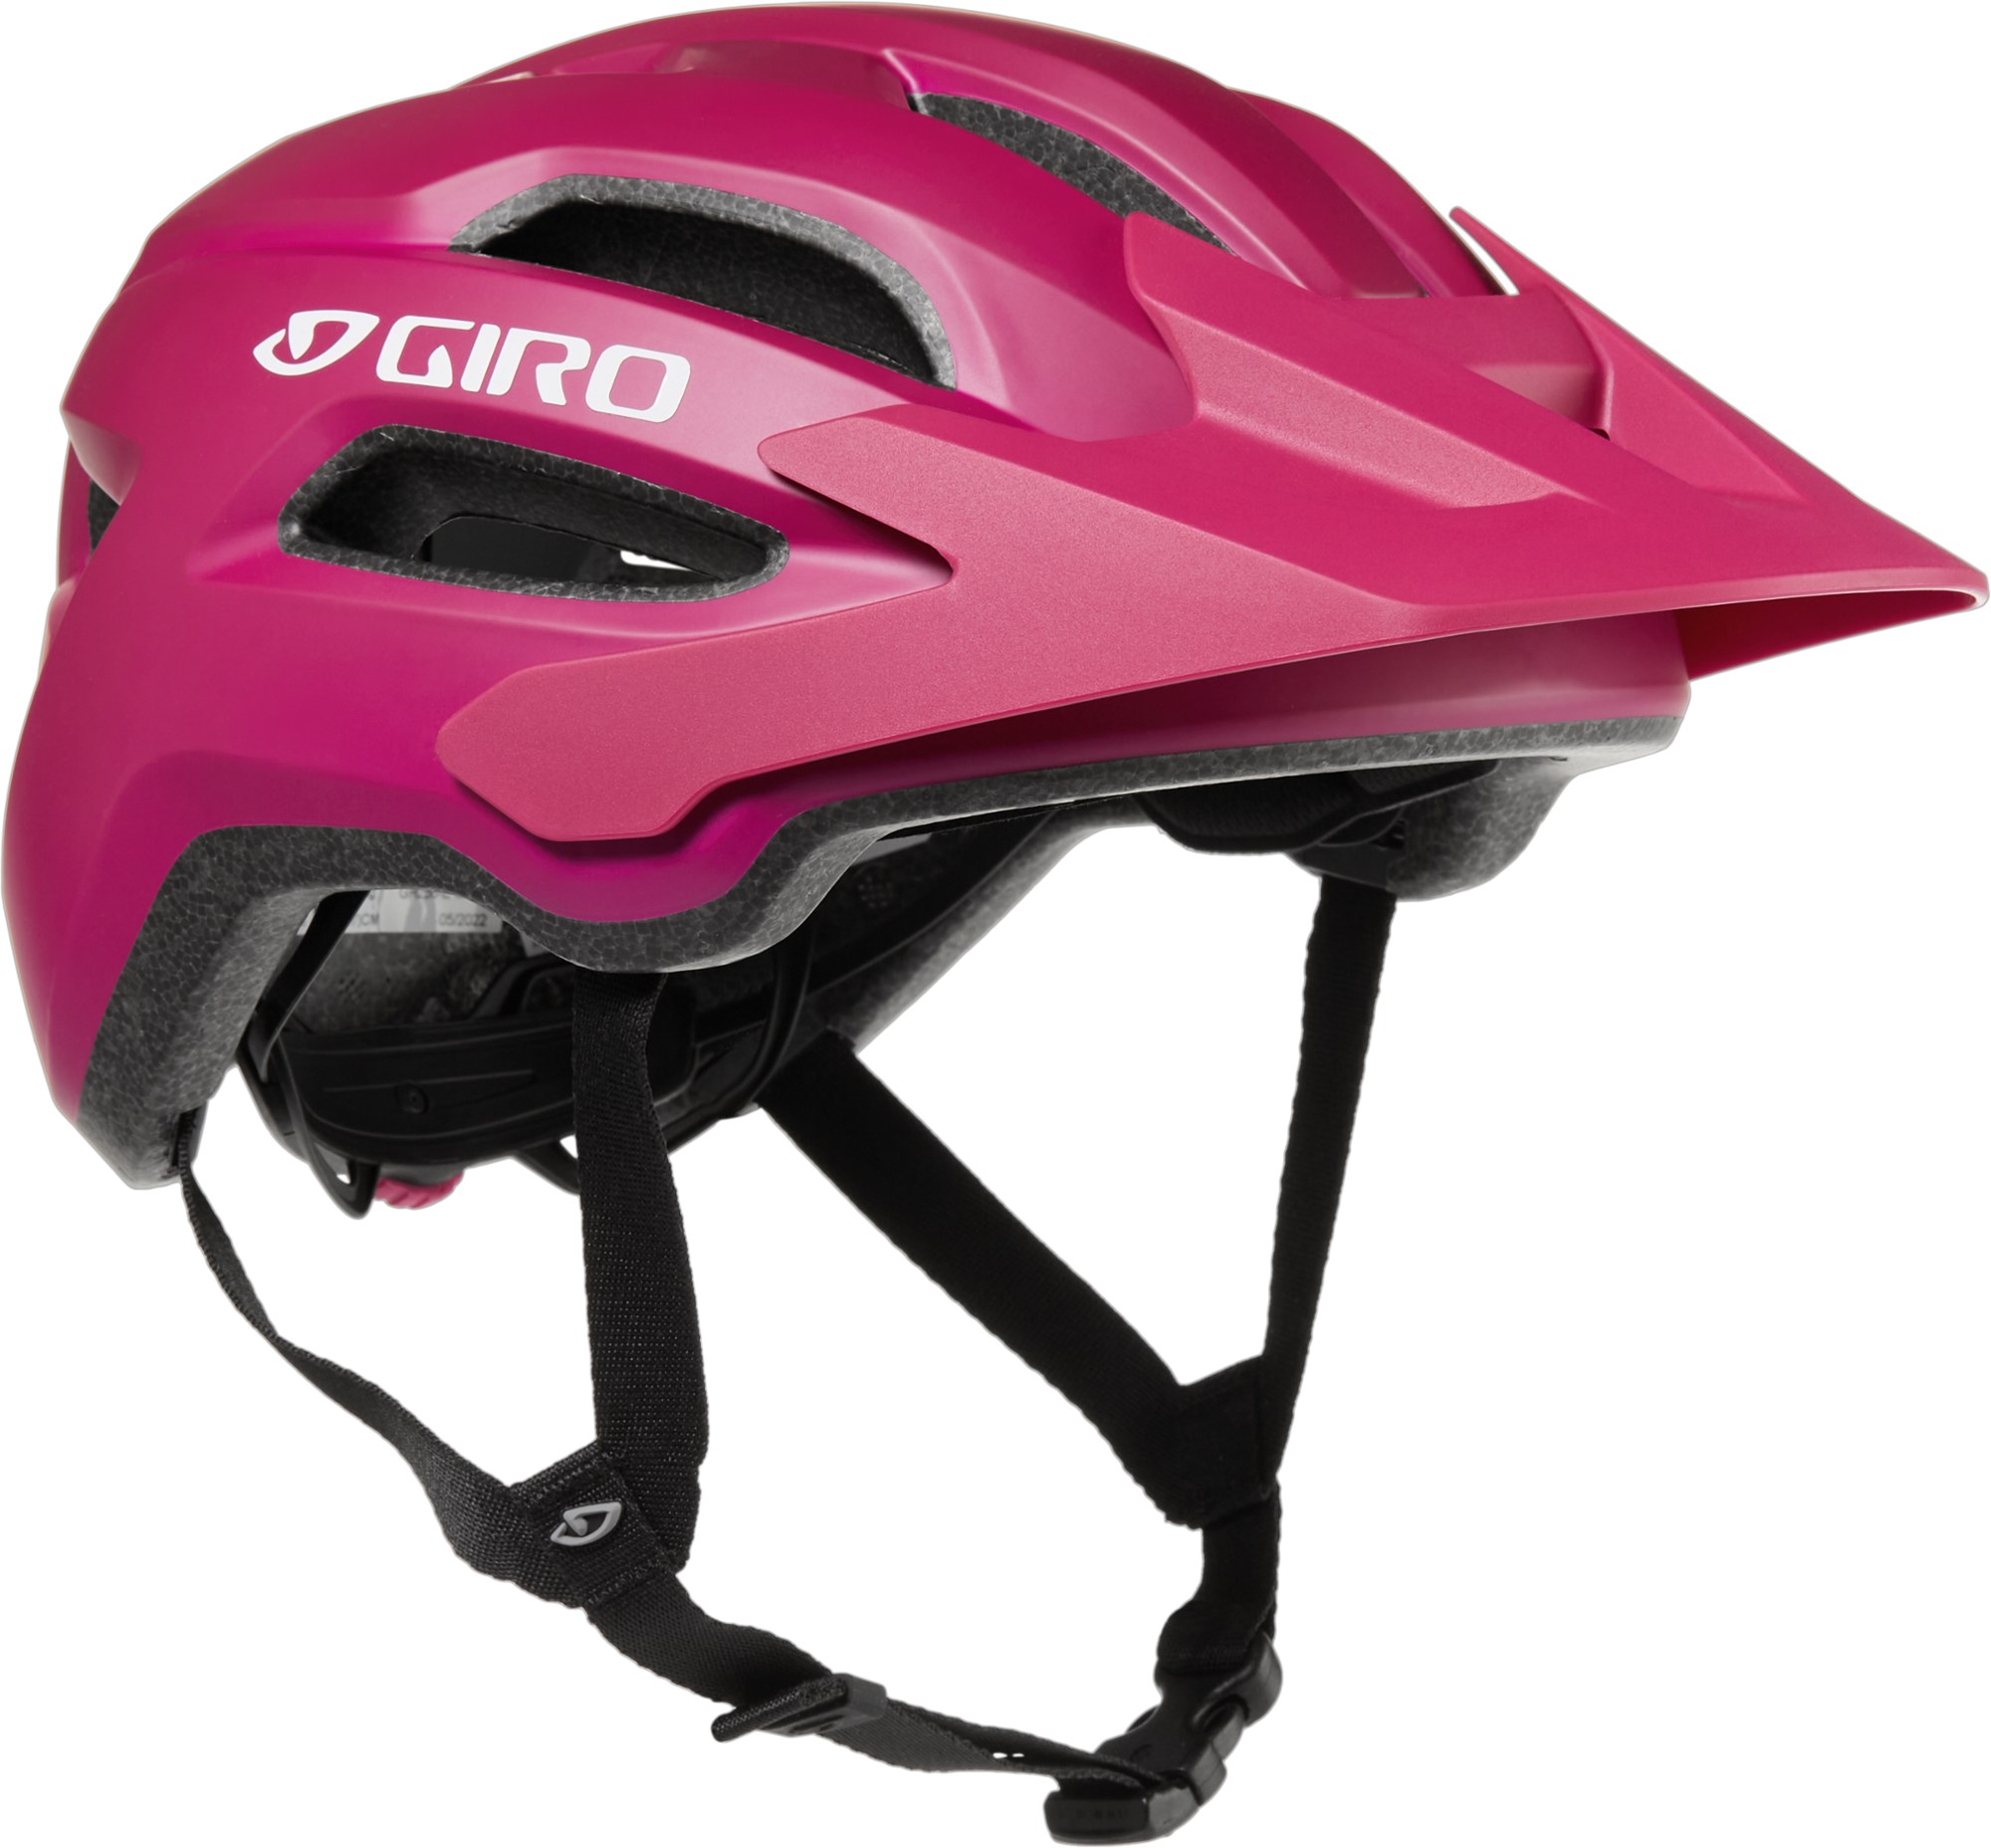 Велосипедный шлем Fixture Mips II — детский Giro, розовый крепление mips ii велосипедный шлем giro белый